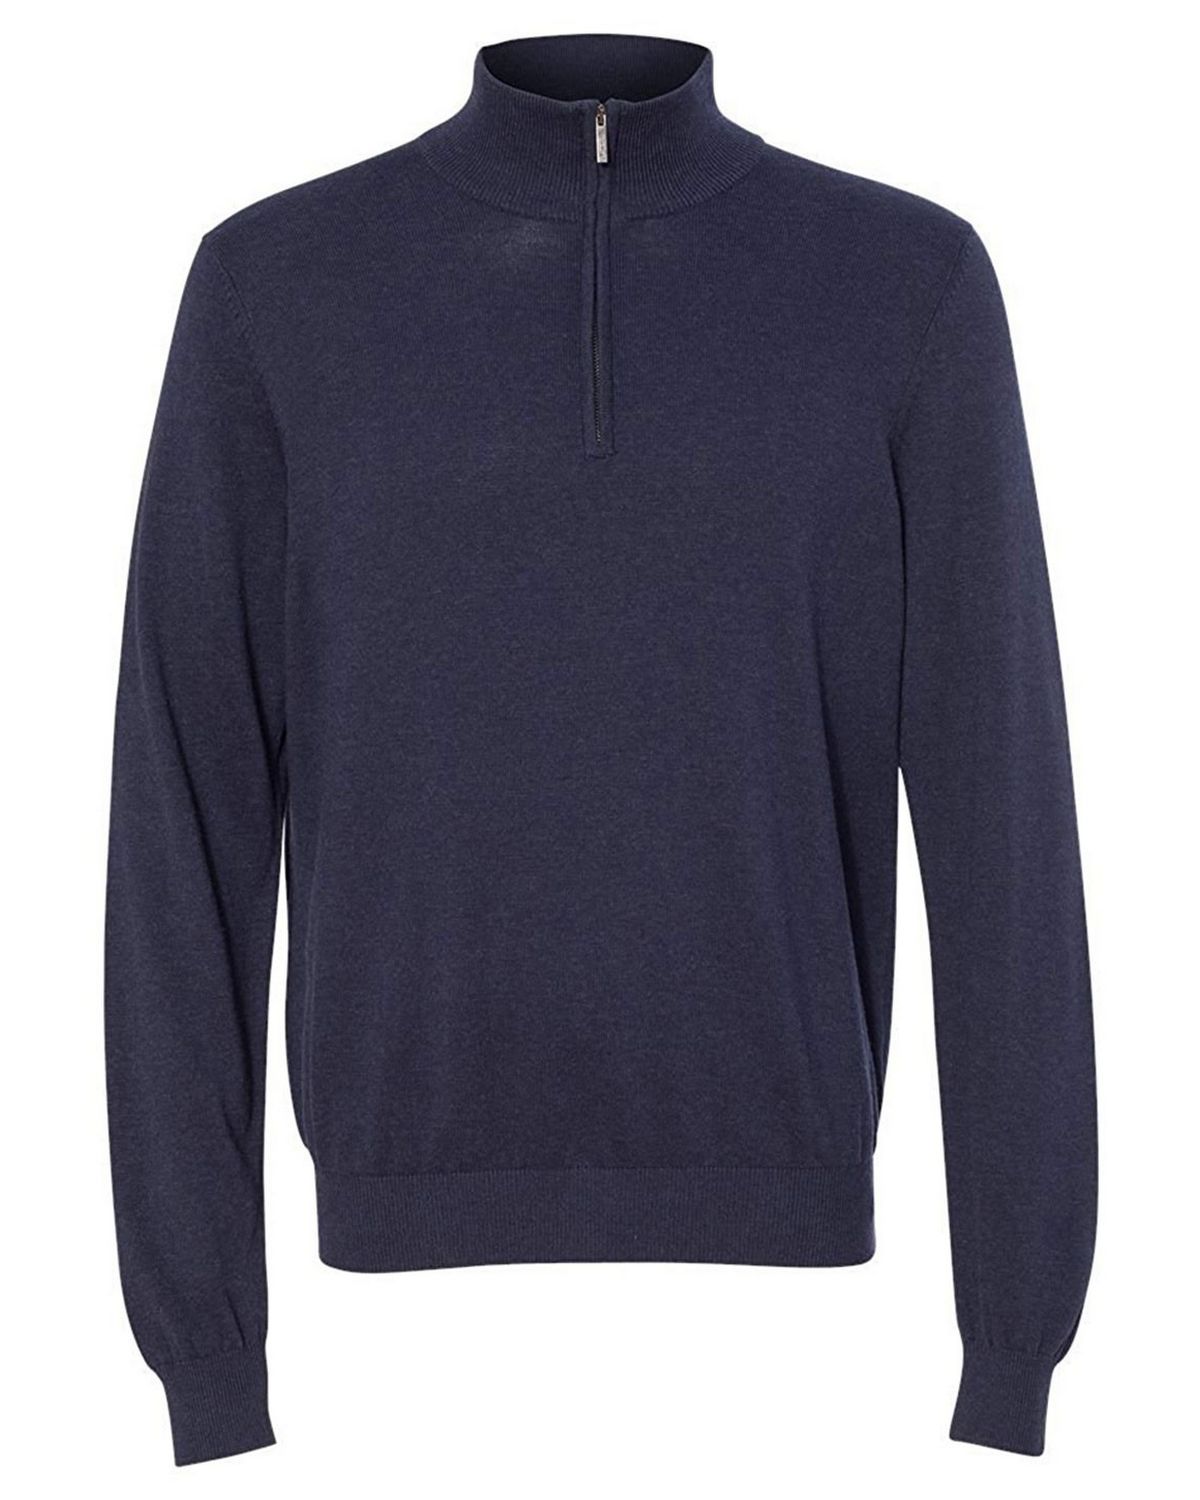 Buy Van Heusen 13VS005 Mens Quarter-Zip Mock Neck Sweater